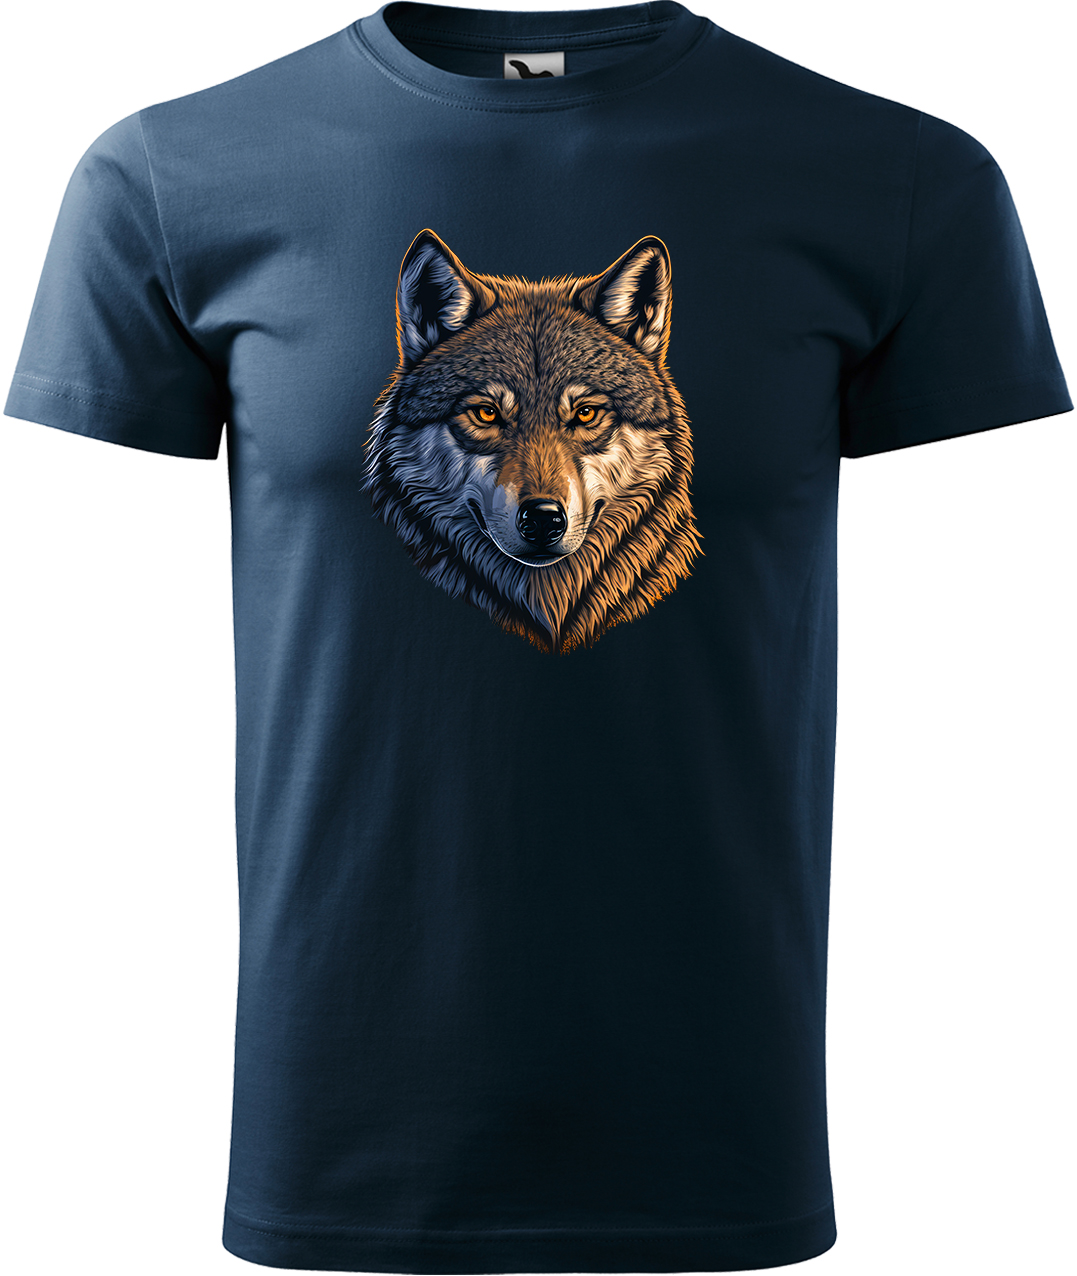 Pánské tričko s vlkem - Hlava vlka Velikost: XL, Barva: Námořní modrá (02), Střih: pánský